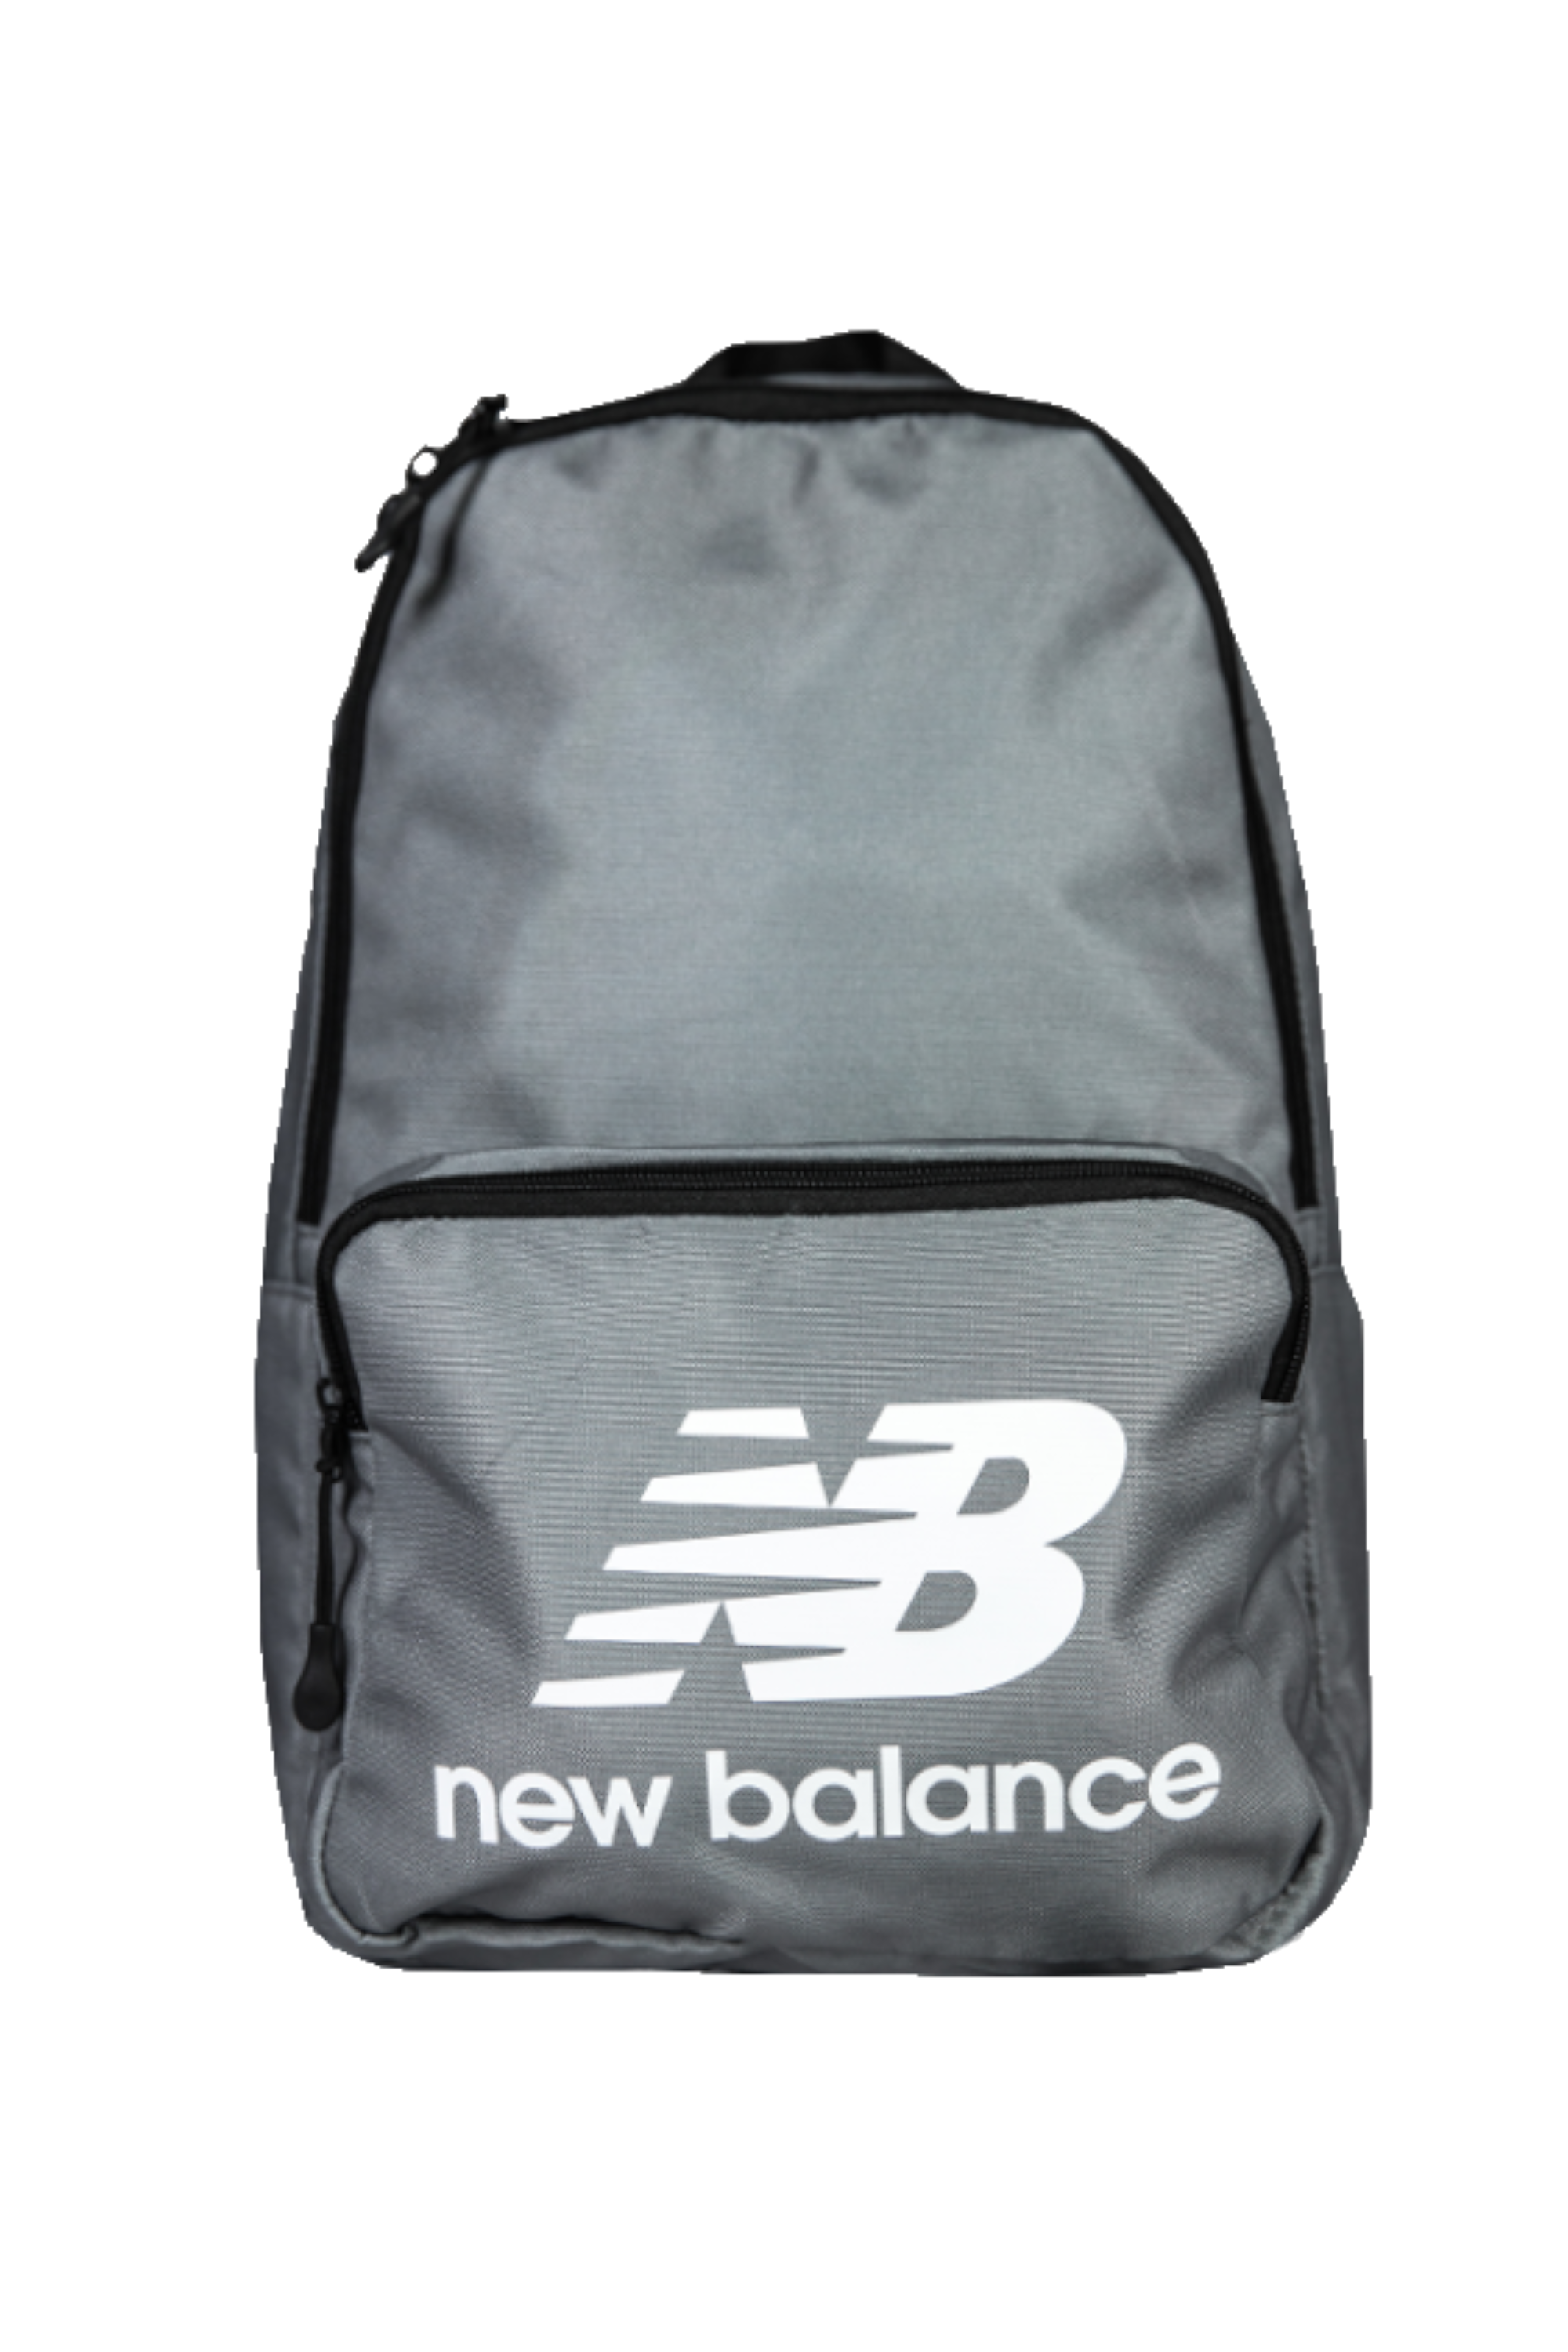 new balance bag